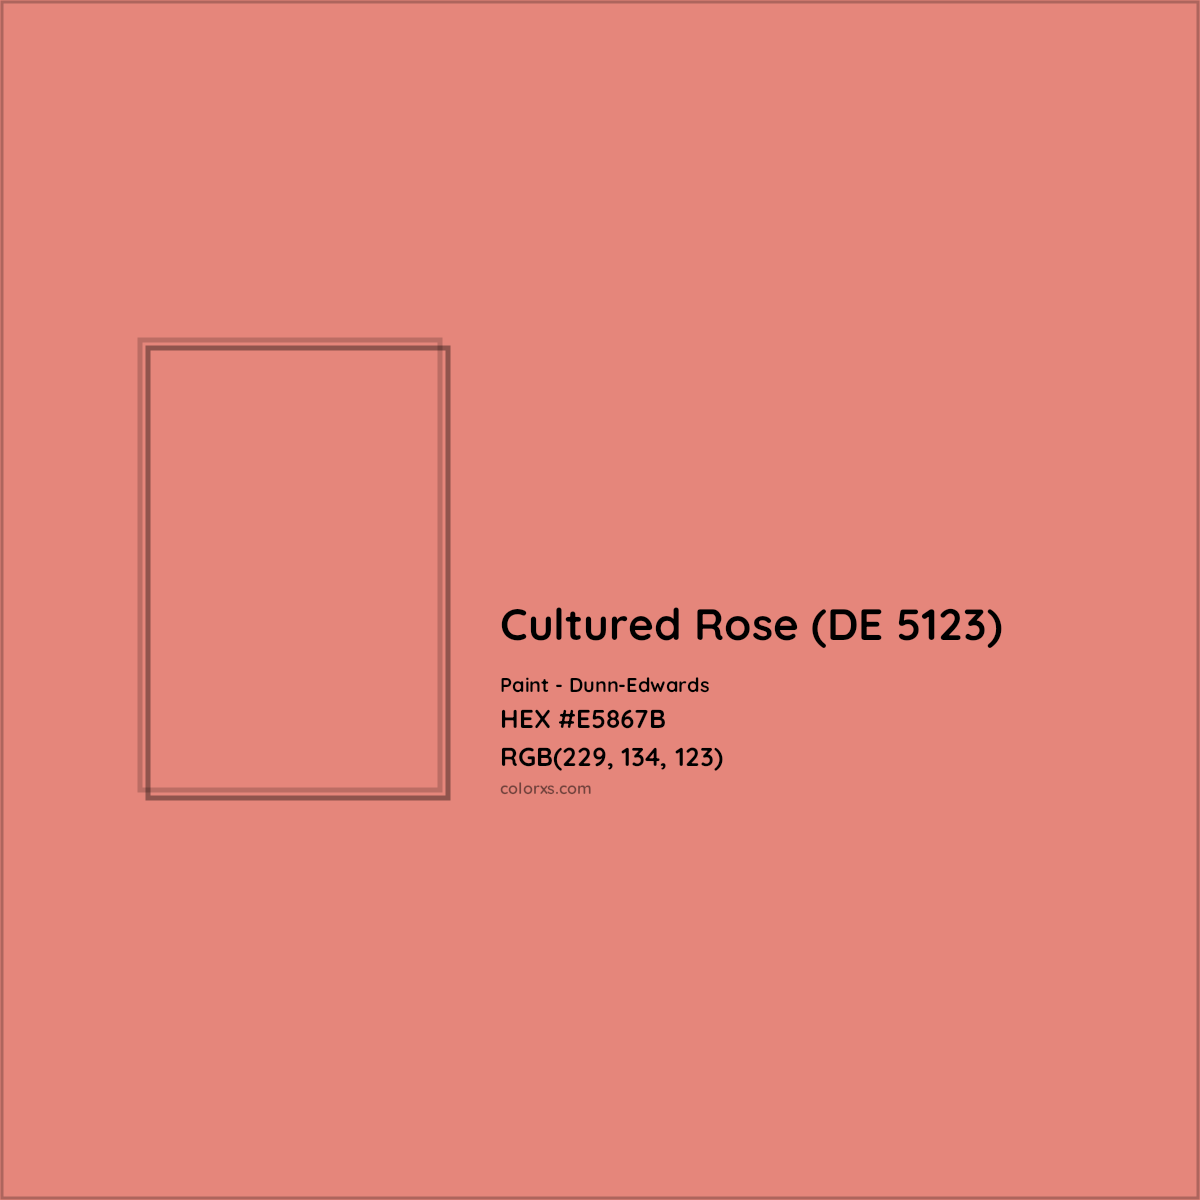 HEX #E5867B Cultured Rose (DE 5123) Paint Dunn-Edwards - Color Code